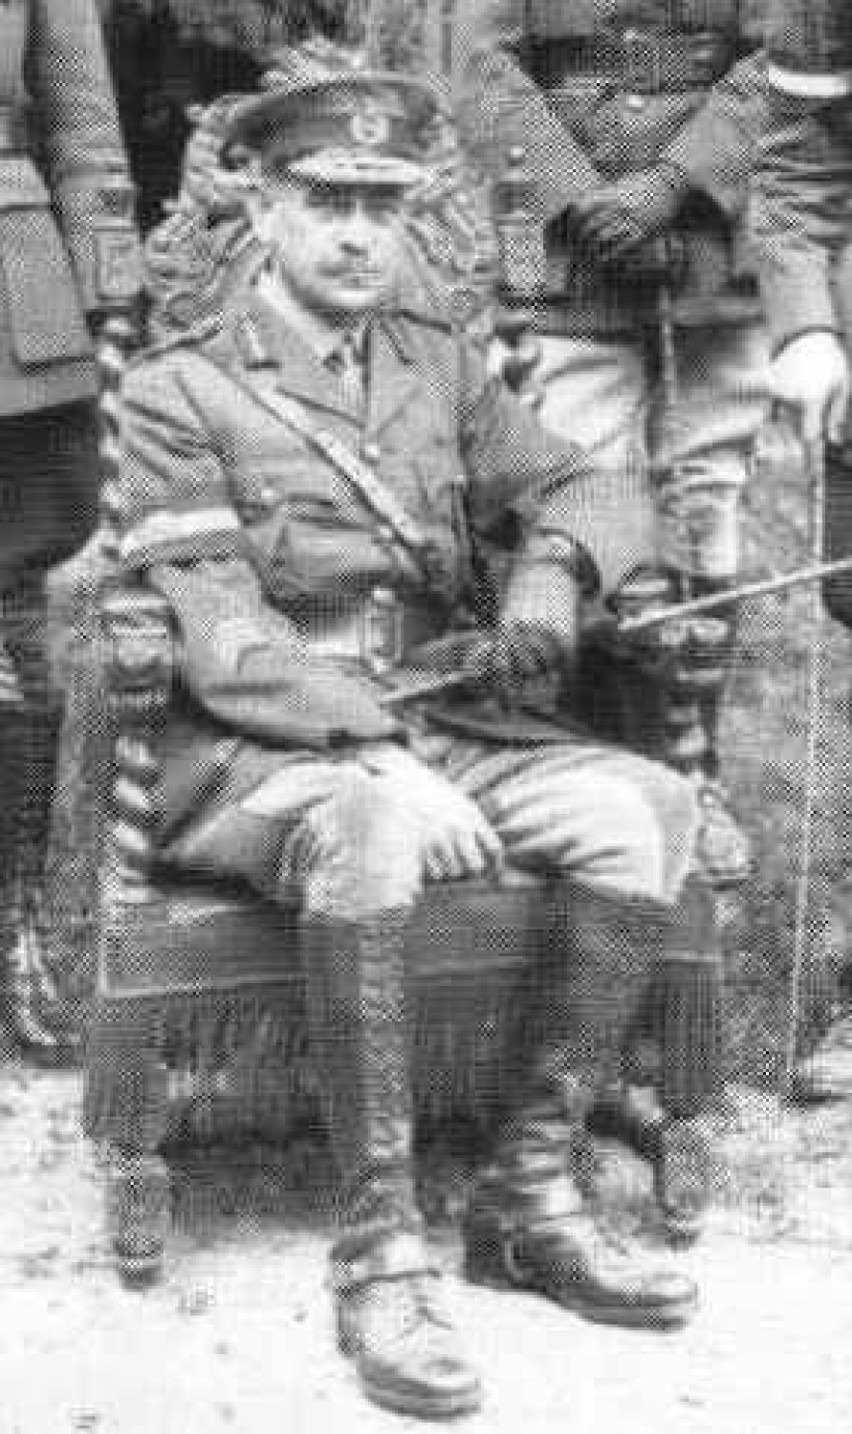 Generał John Monash w trakcie I wojnie światowej